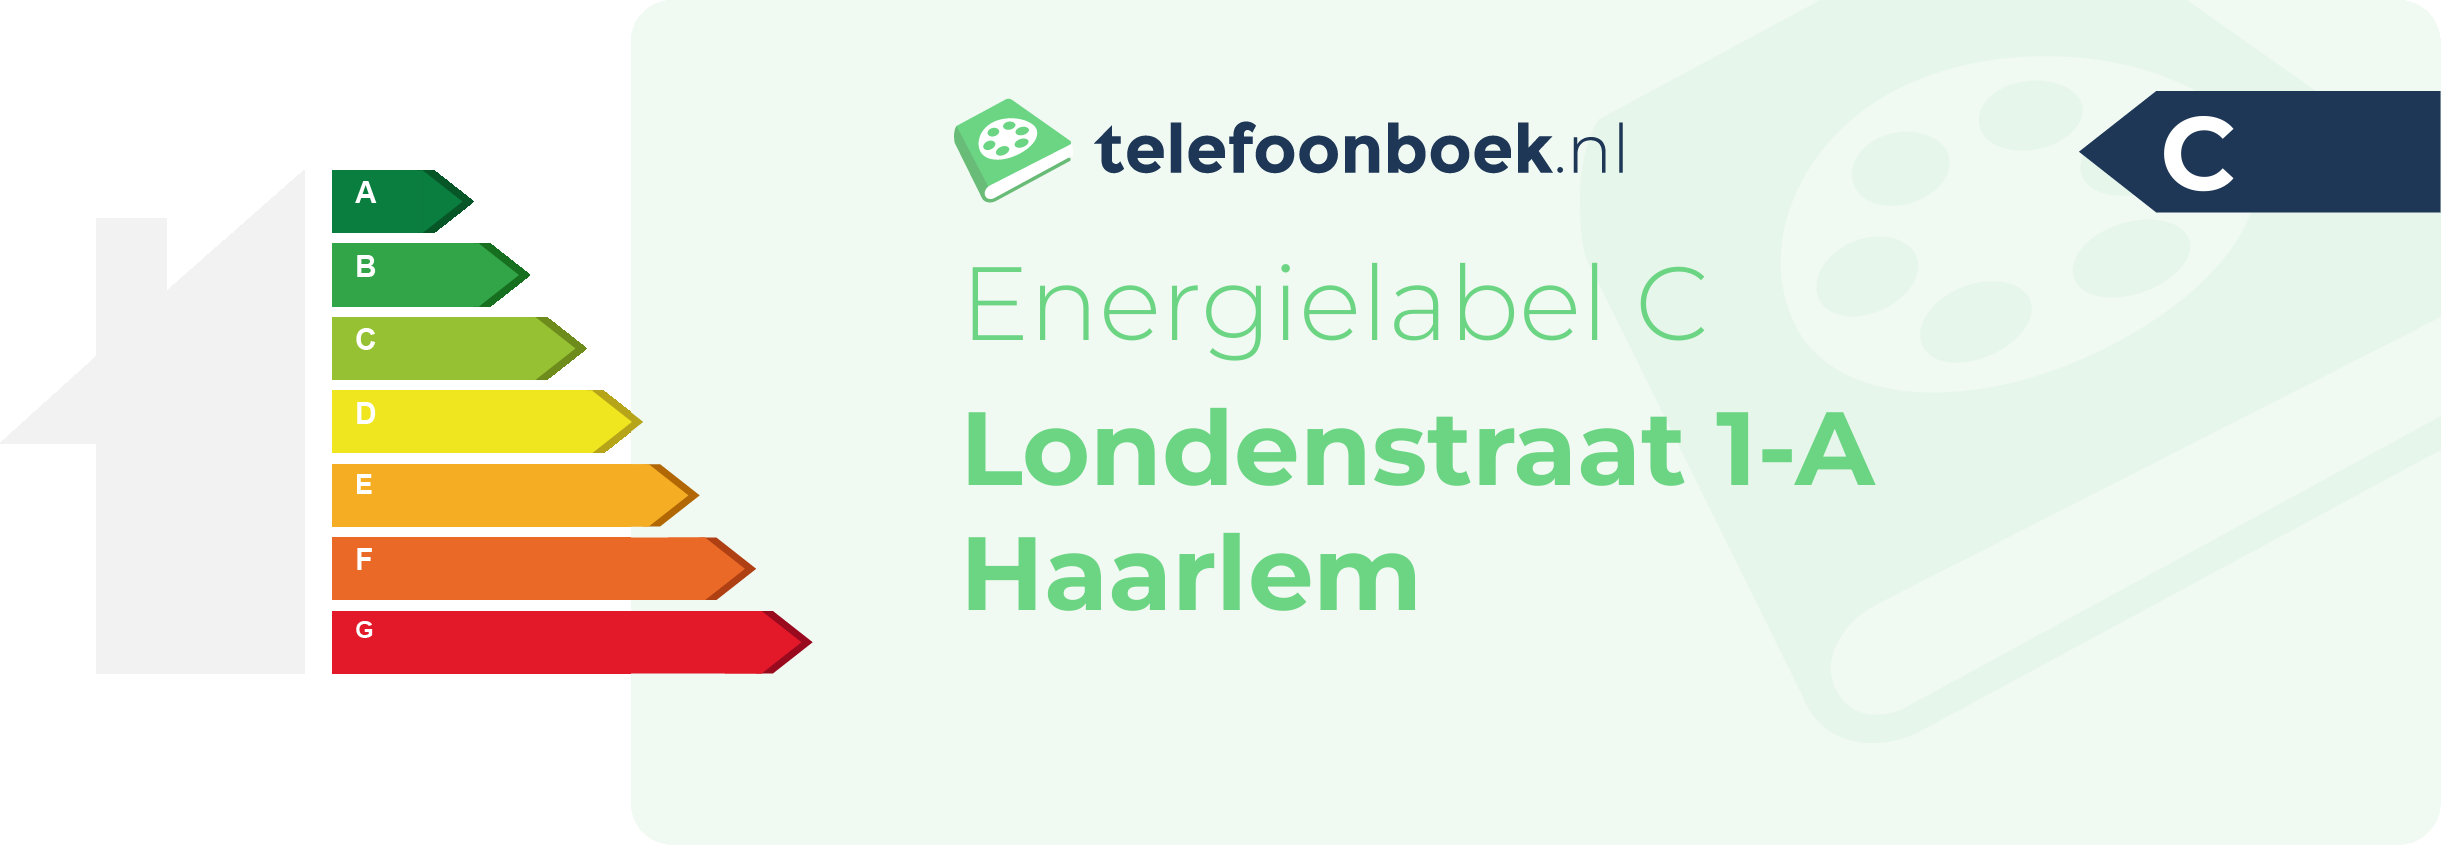 Energielabel Londenstraat 1-A Haarlem